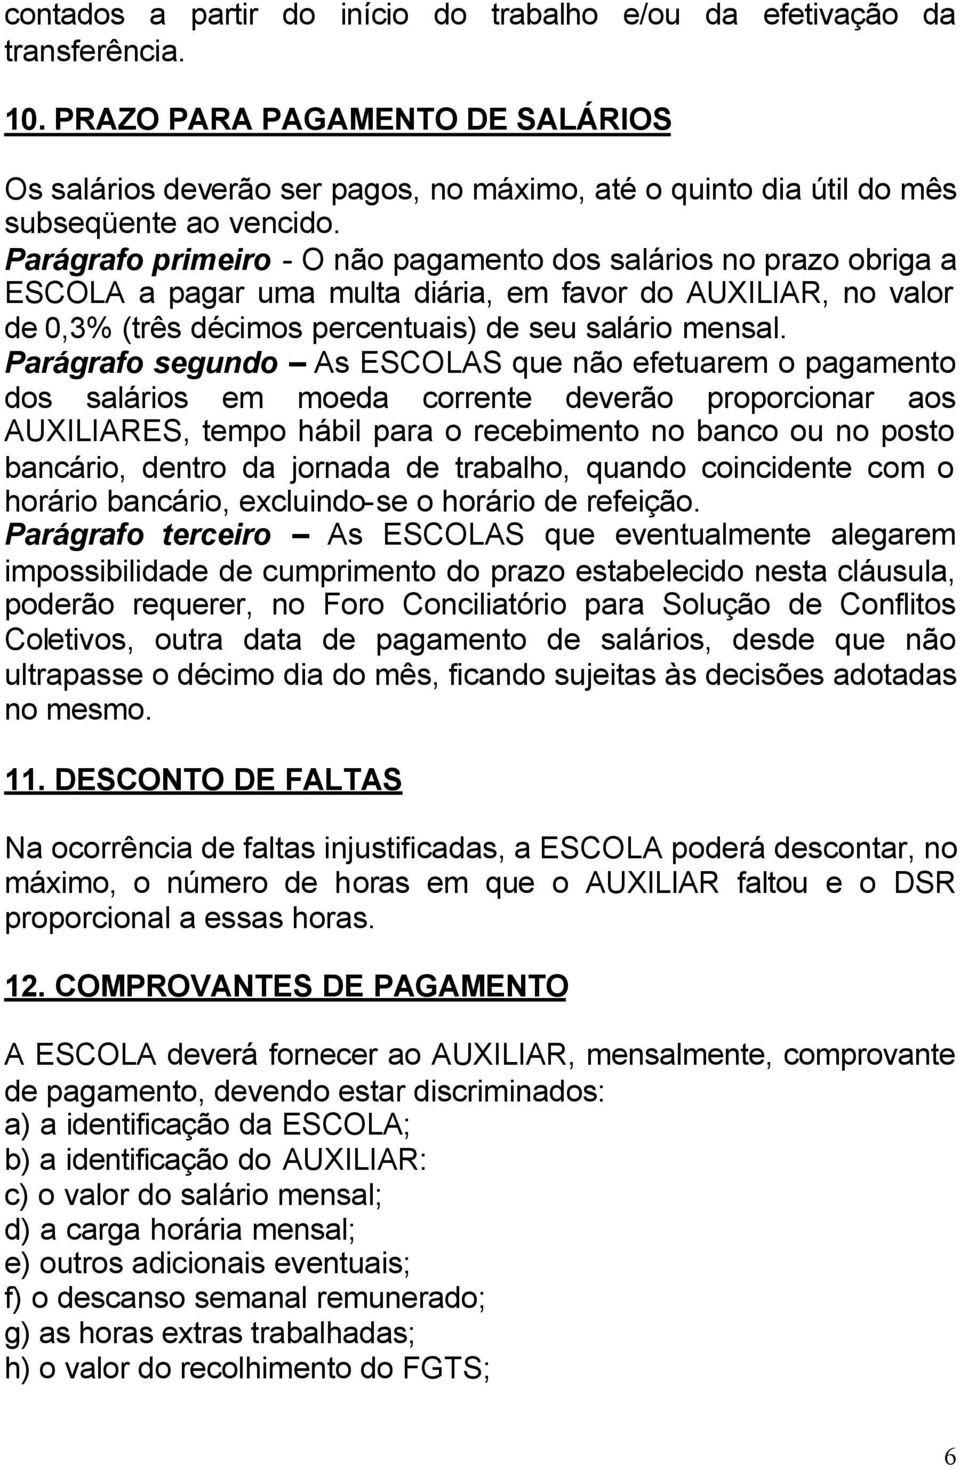 Parágrafo primeiro - O não pagamento dos salários no prazo obriga a ESCOLA a pagar uma multa diária, em favor do AUXILIAR, no valor de 0,3% (três décimos percentuais) de seu salário mensal.